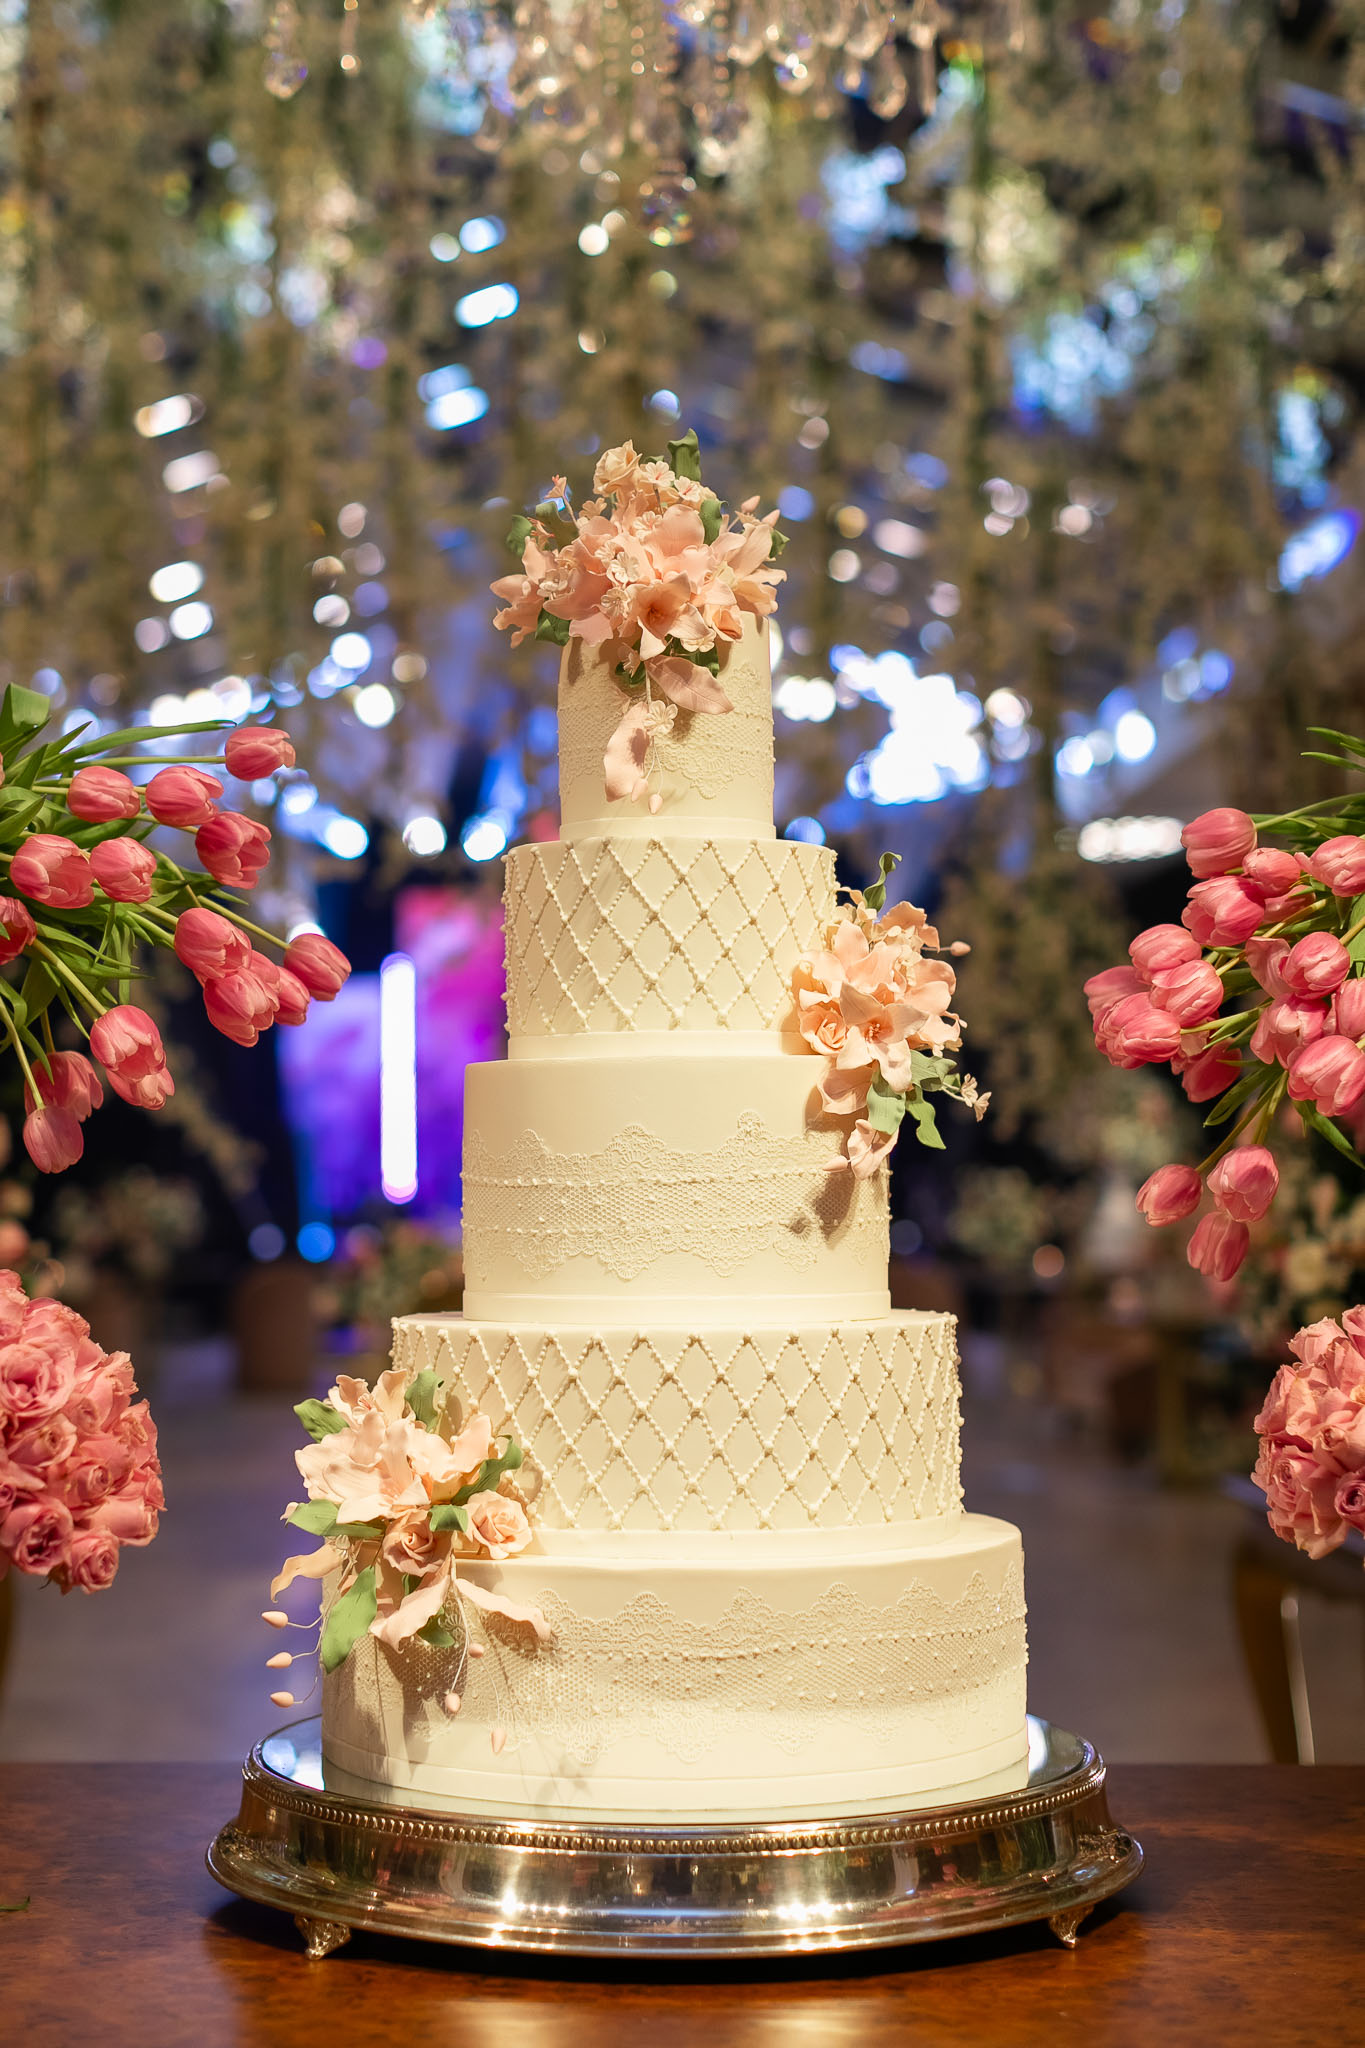 Detalhes do bolo do casamento - Foto Emerson Fiuza 